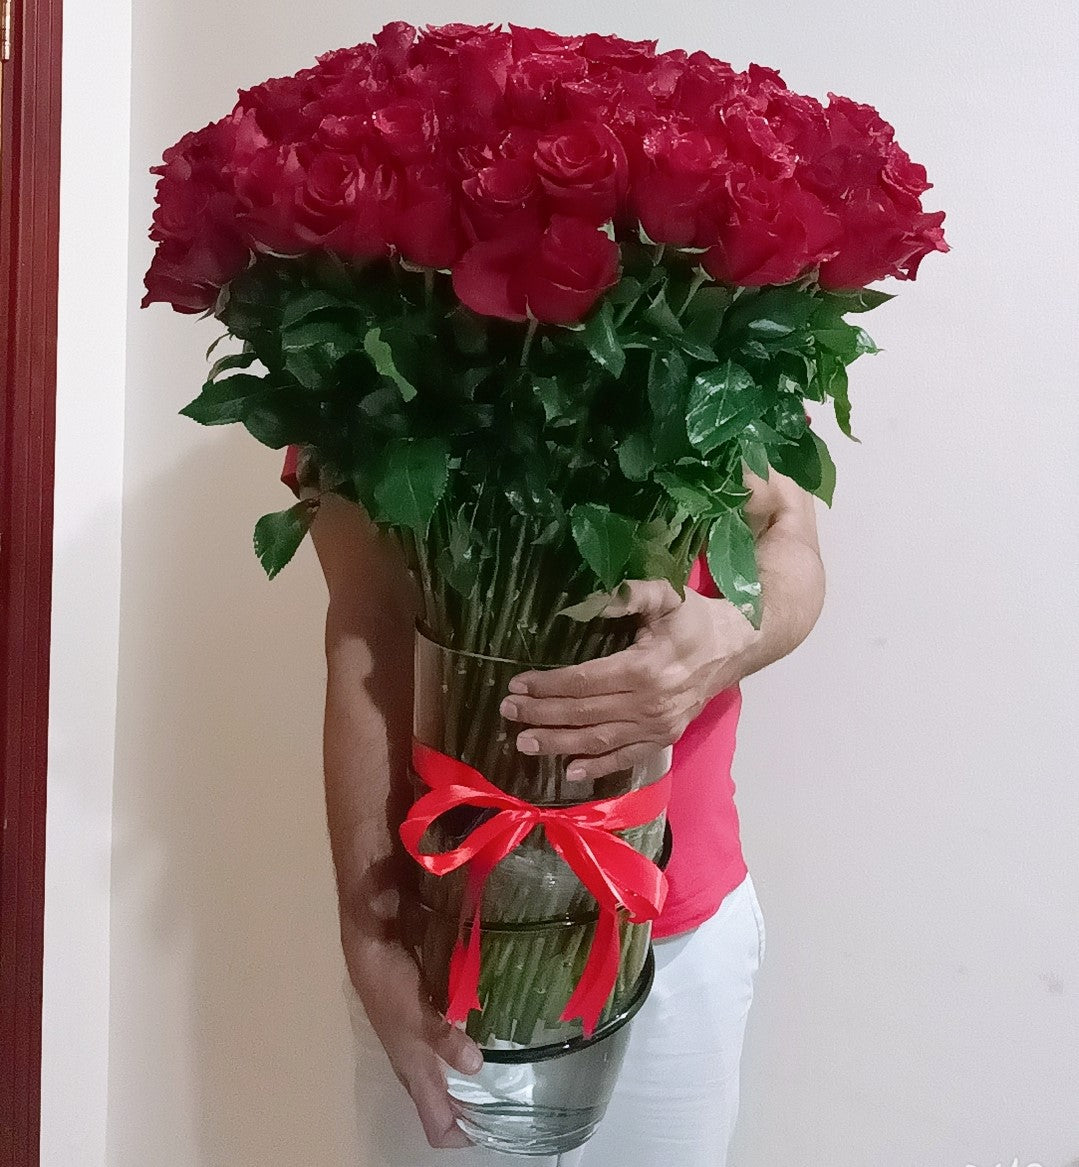 150 Roses 70 CM in Vase Arrangement